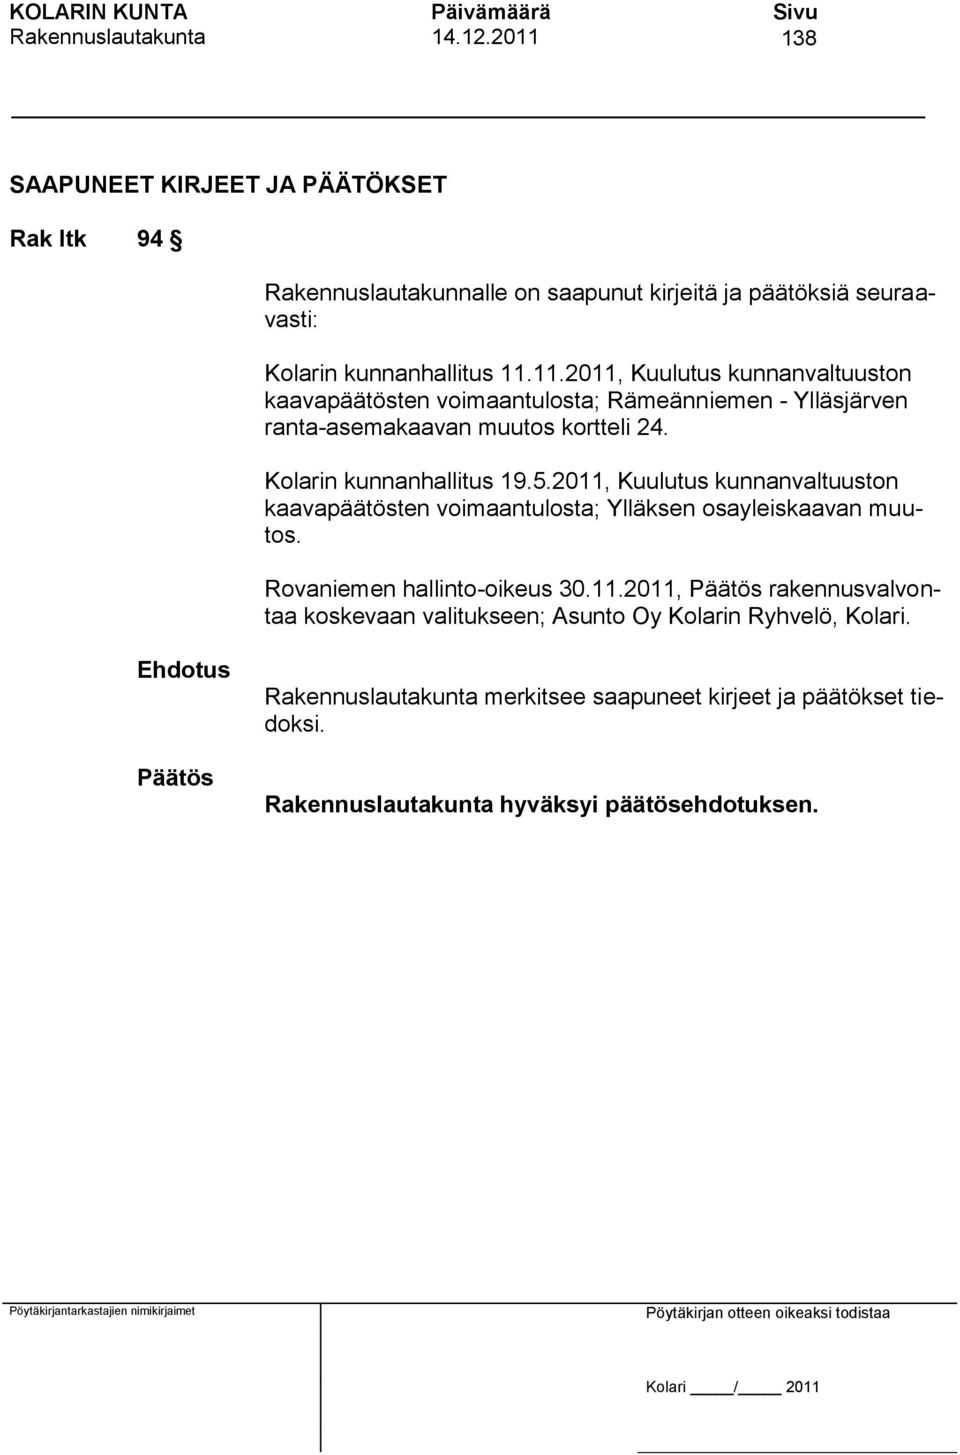 Kolarin kunnanhallitus 19.5.2011, Kuulutus kunnanvaltuuston kaavapäätösten voimaantulosta; Ylläksen osayleiskaavan muutos.